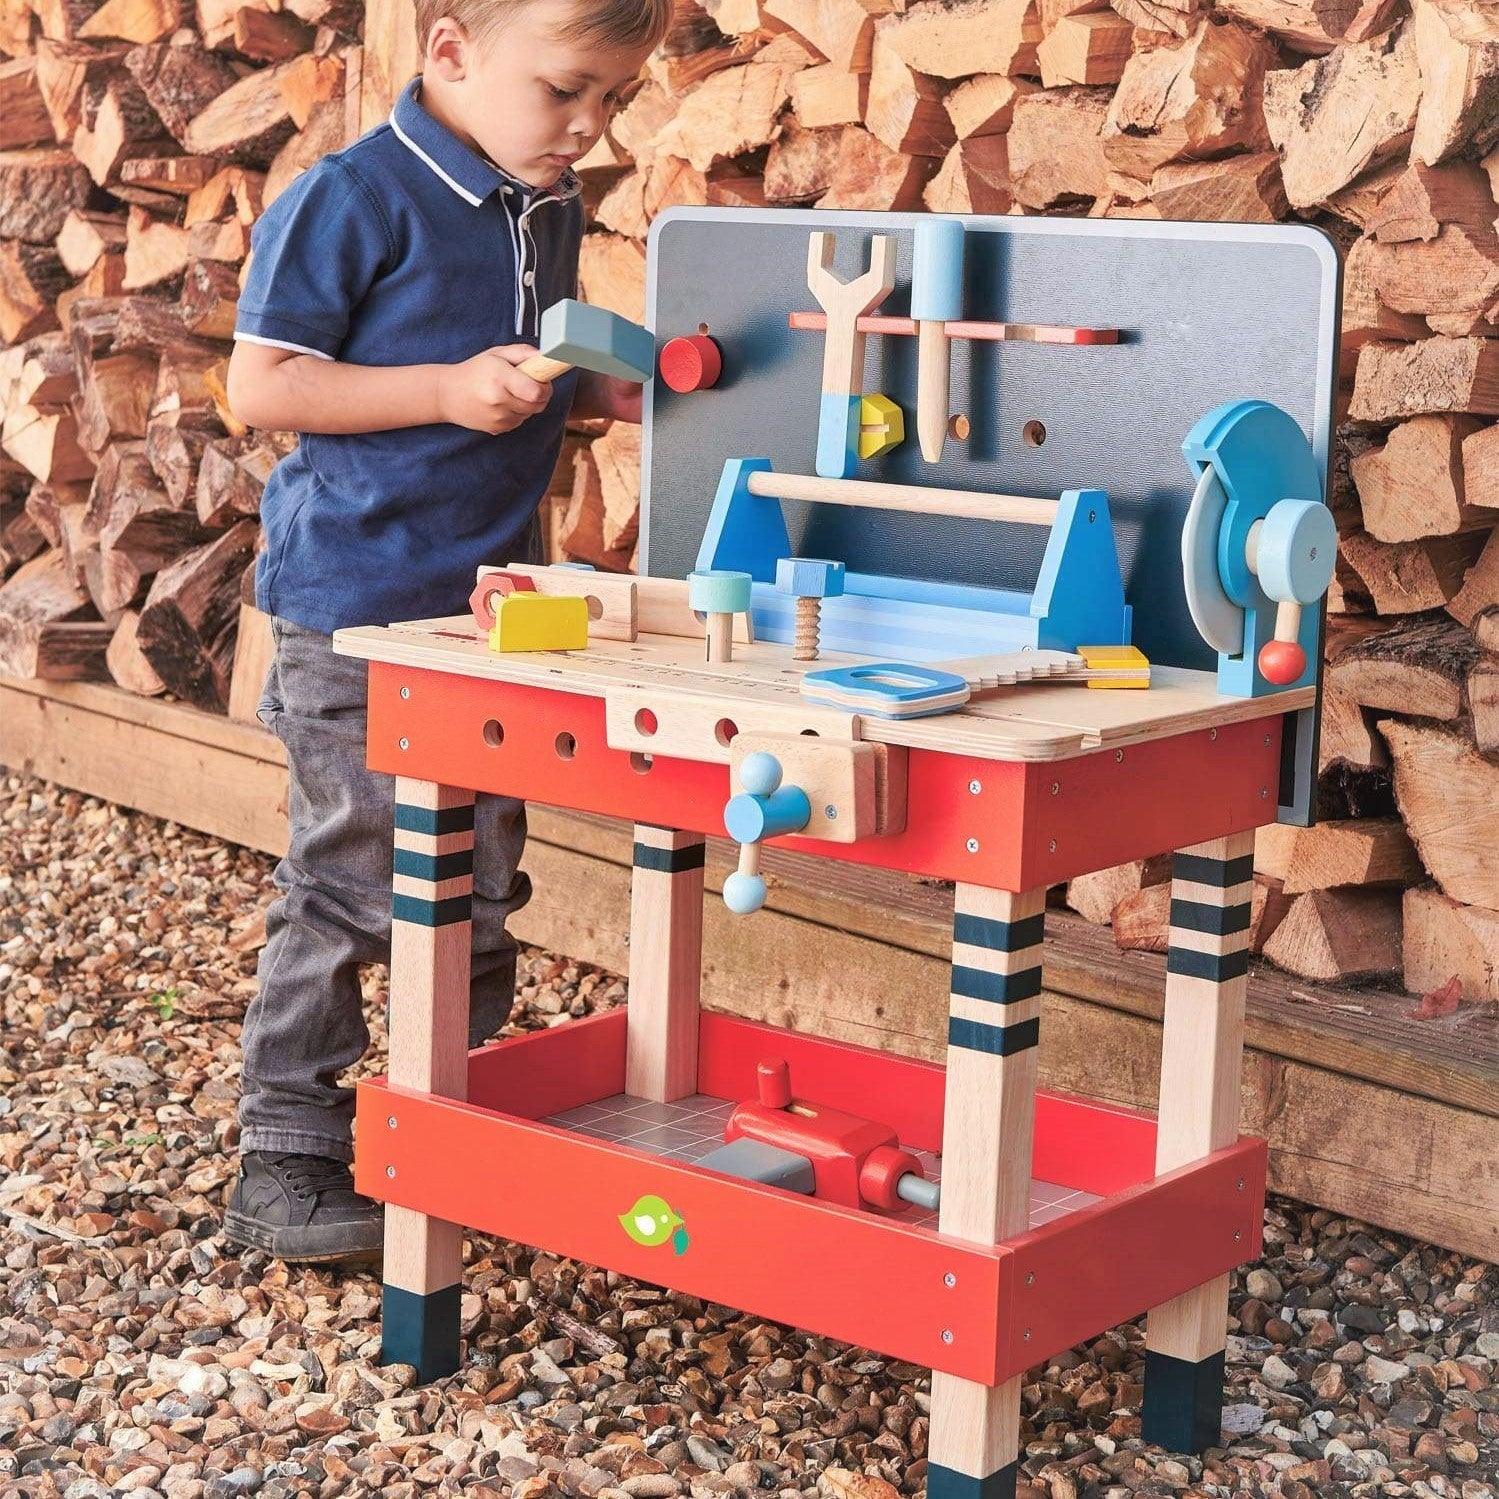 Tender Leaf Toys: Tool Bench workshop